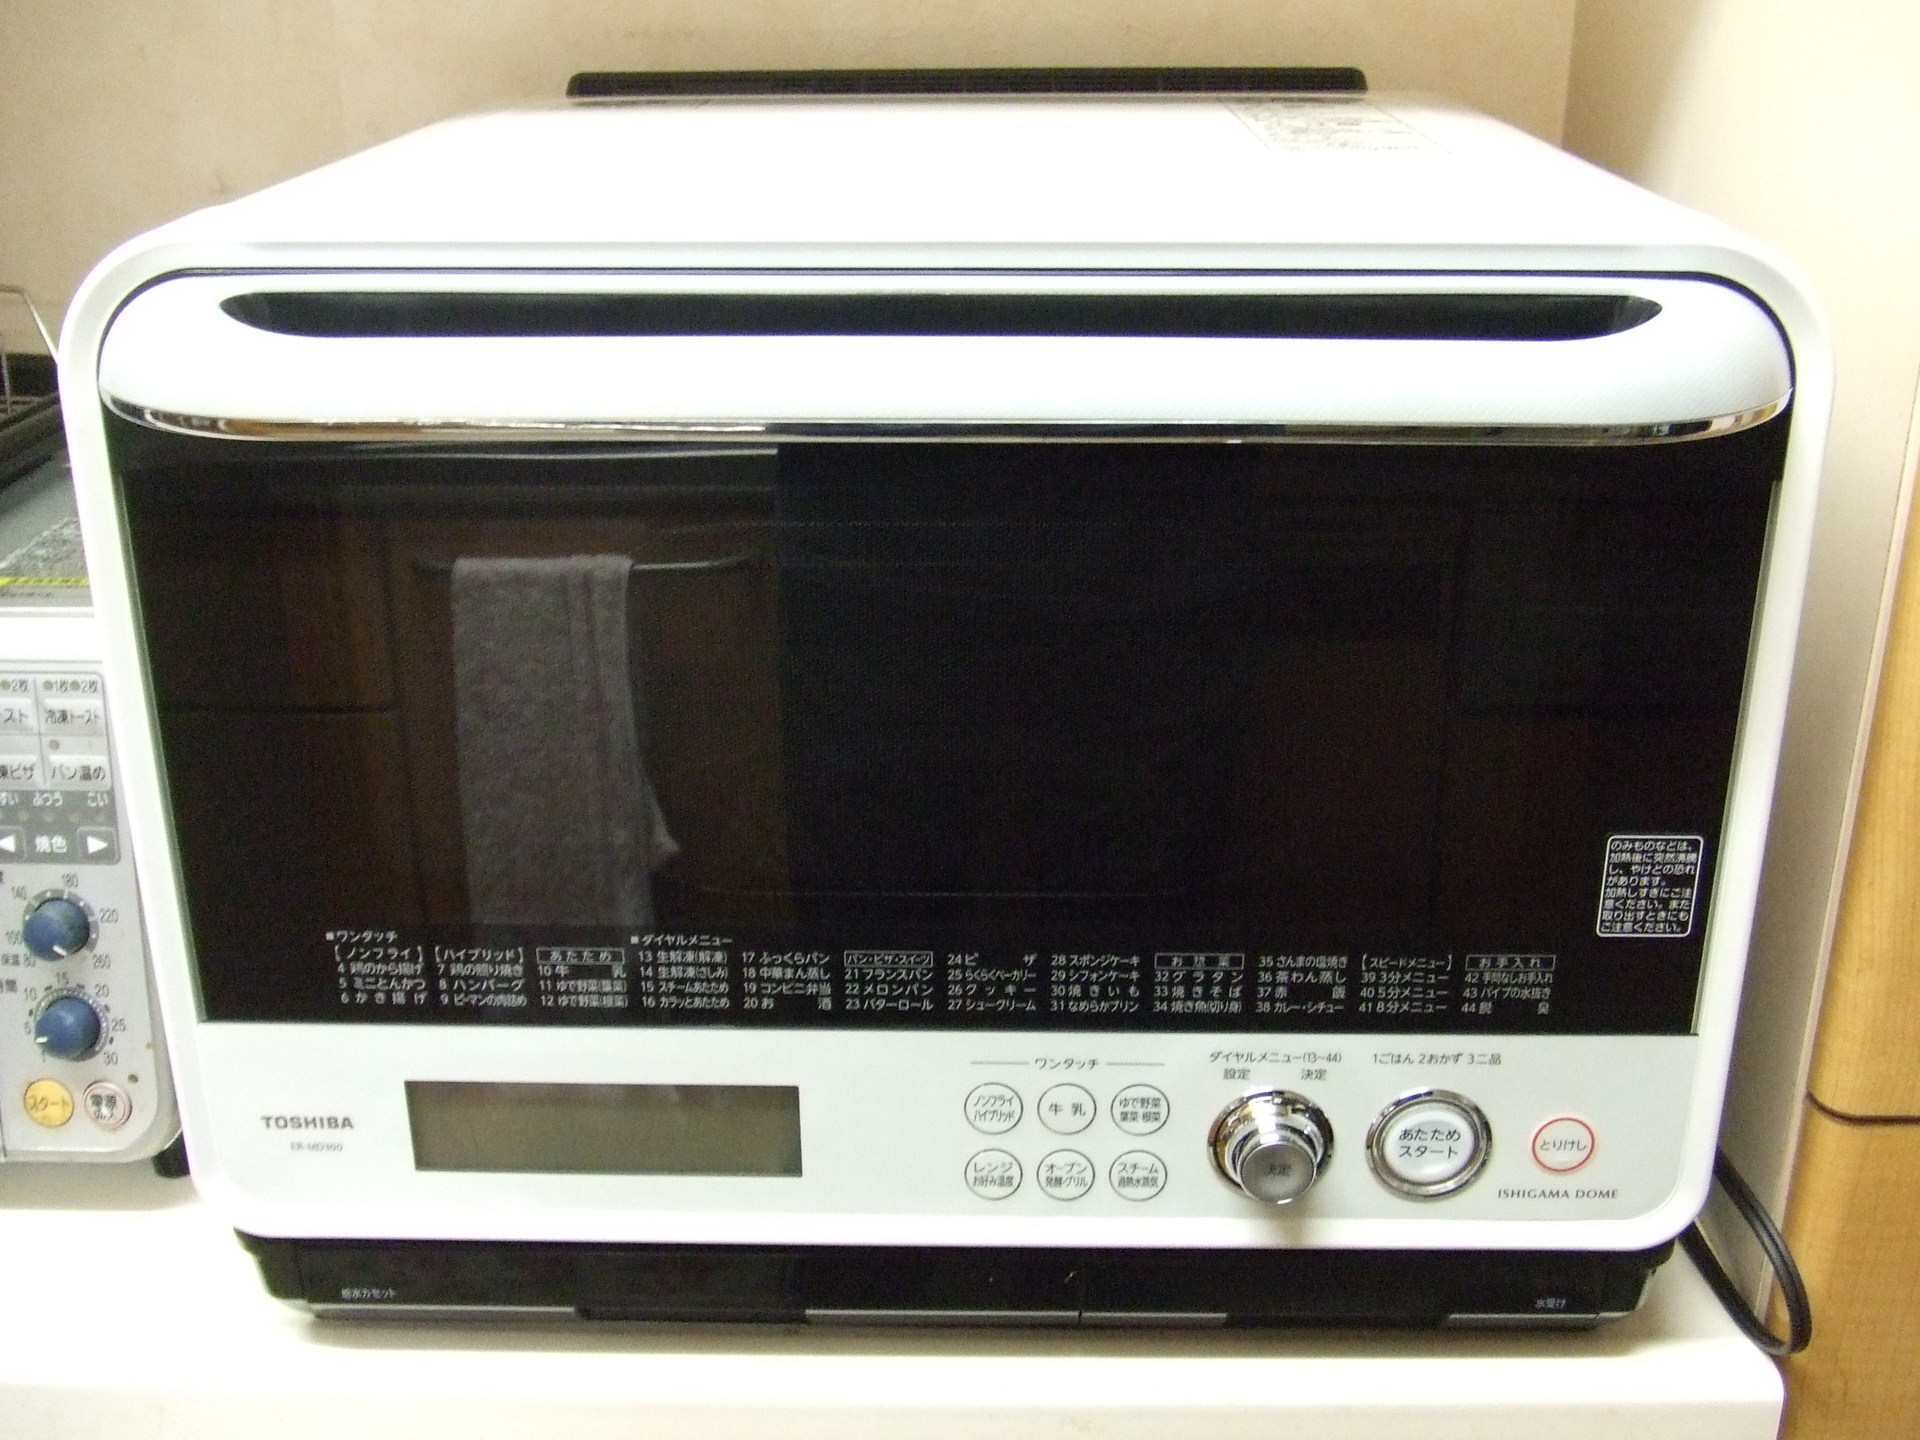 オーブン電子レンジ東芝製 ER-MD300を購入: のんびり写真館